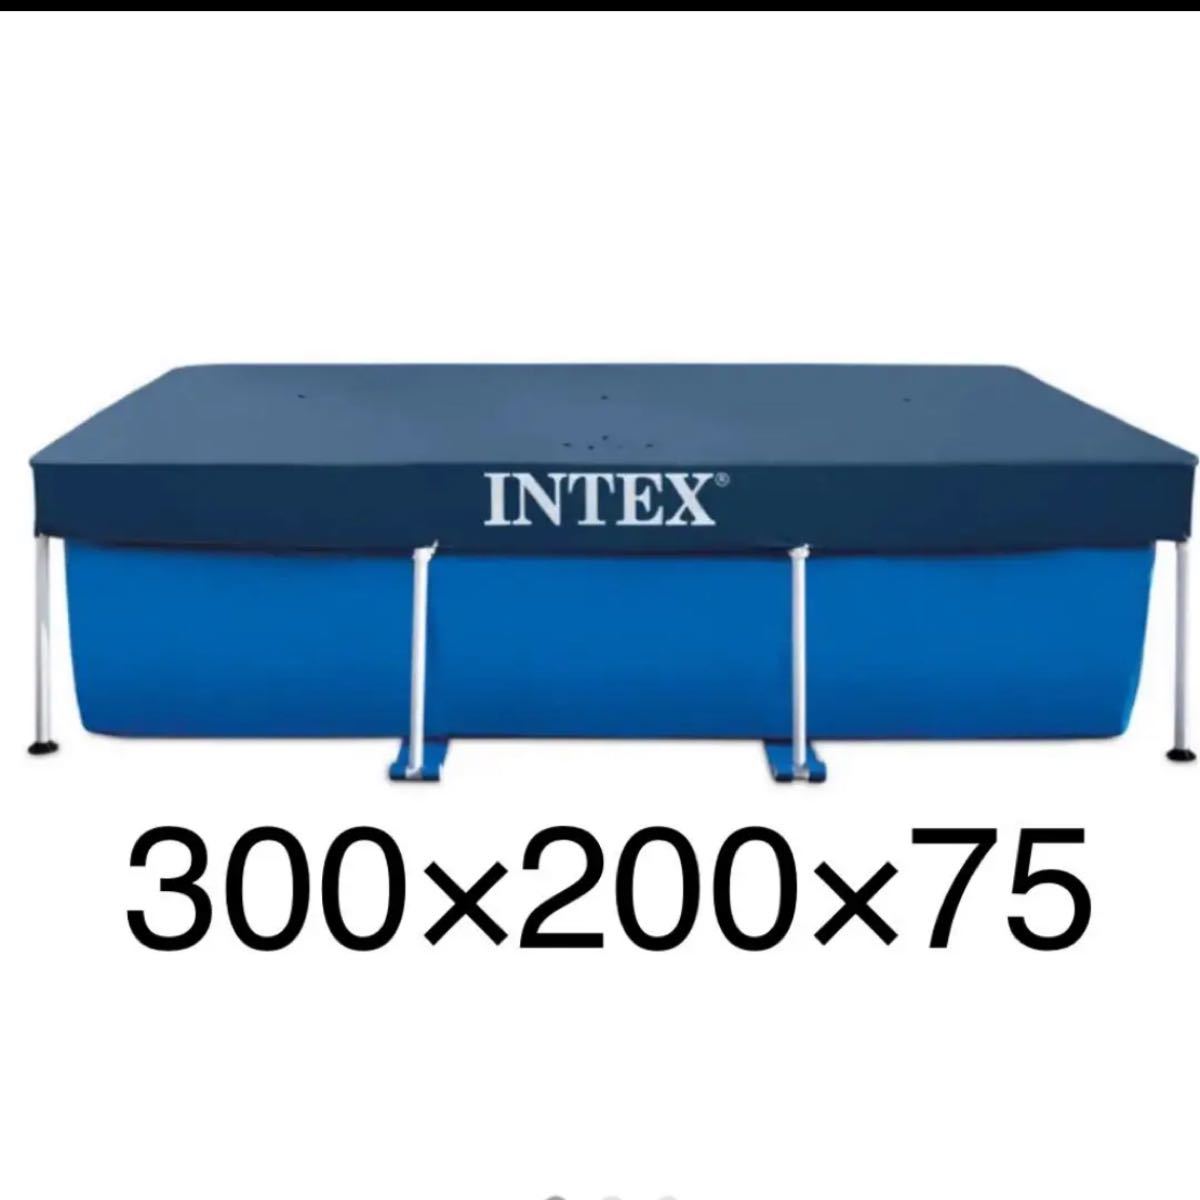 INTEX インテックス フレームプール レクタングラフレームプール プールカバー付き